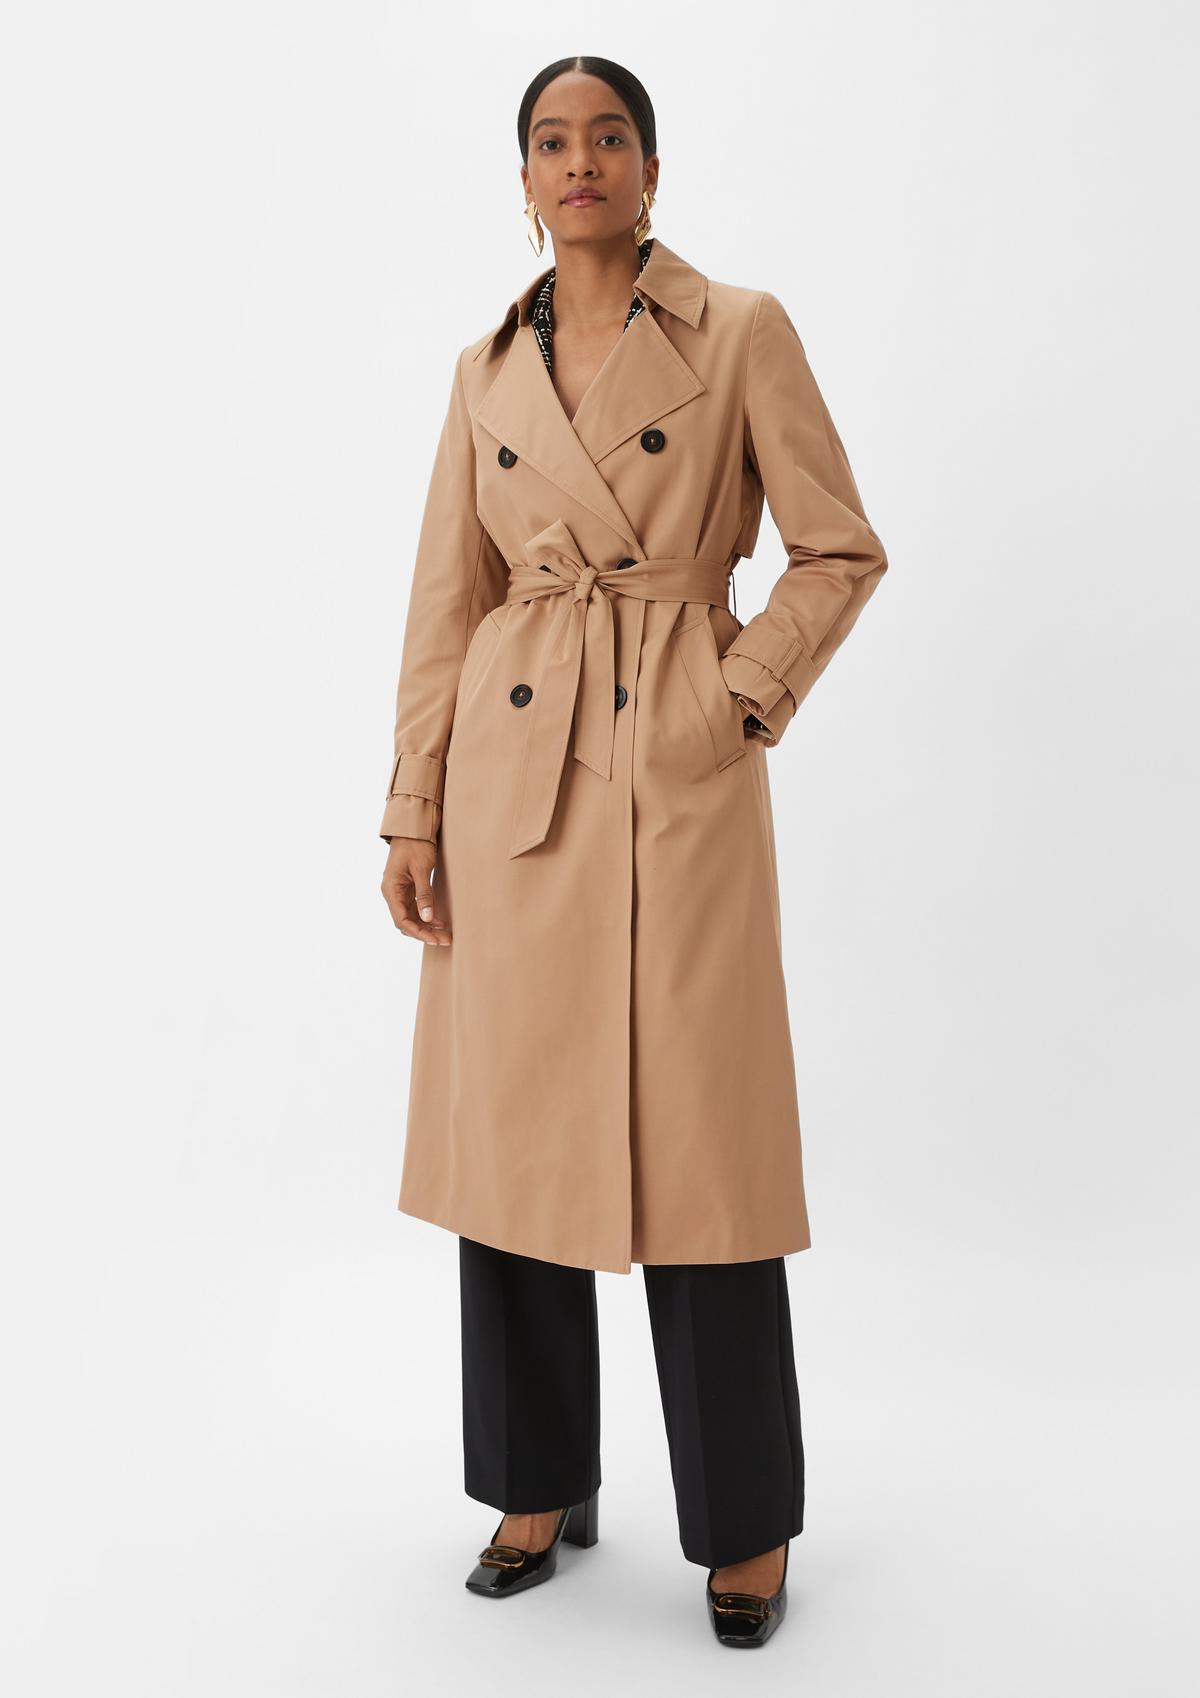 Wool coats – elegant, stylish and high-quality